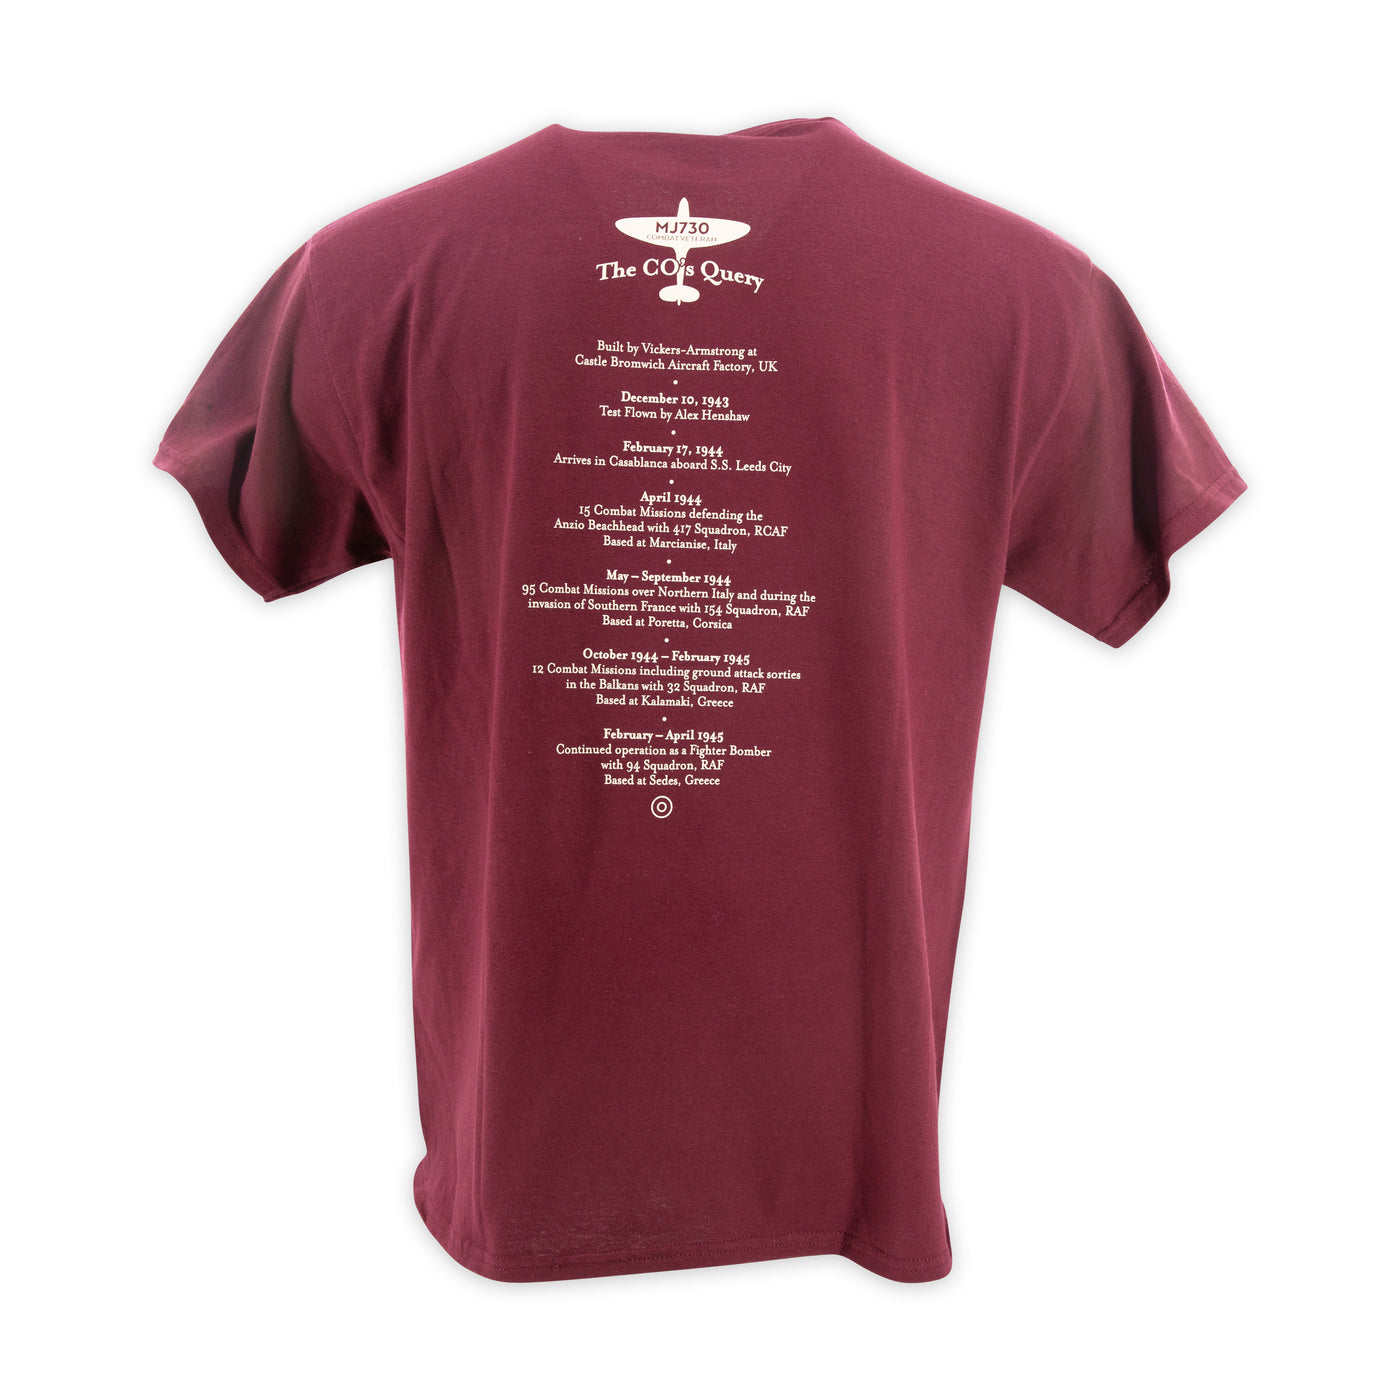 Spitfire Mk IXe T-Shirt